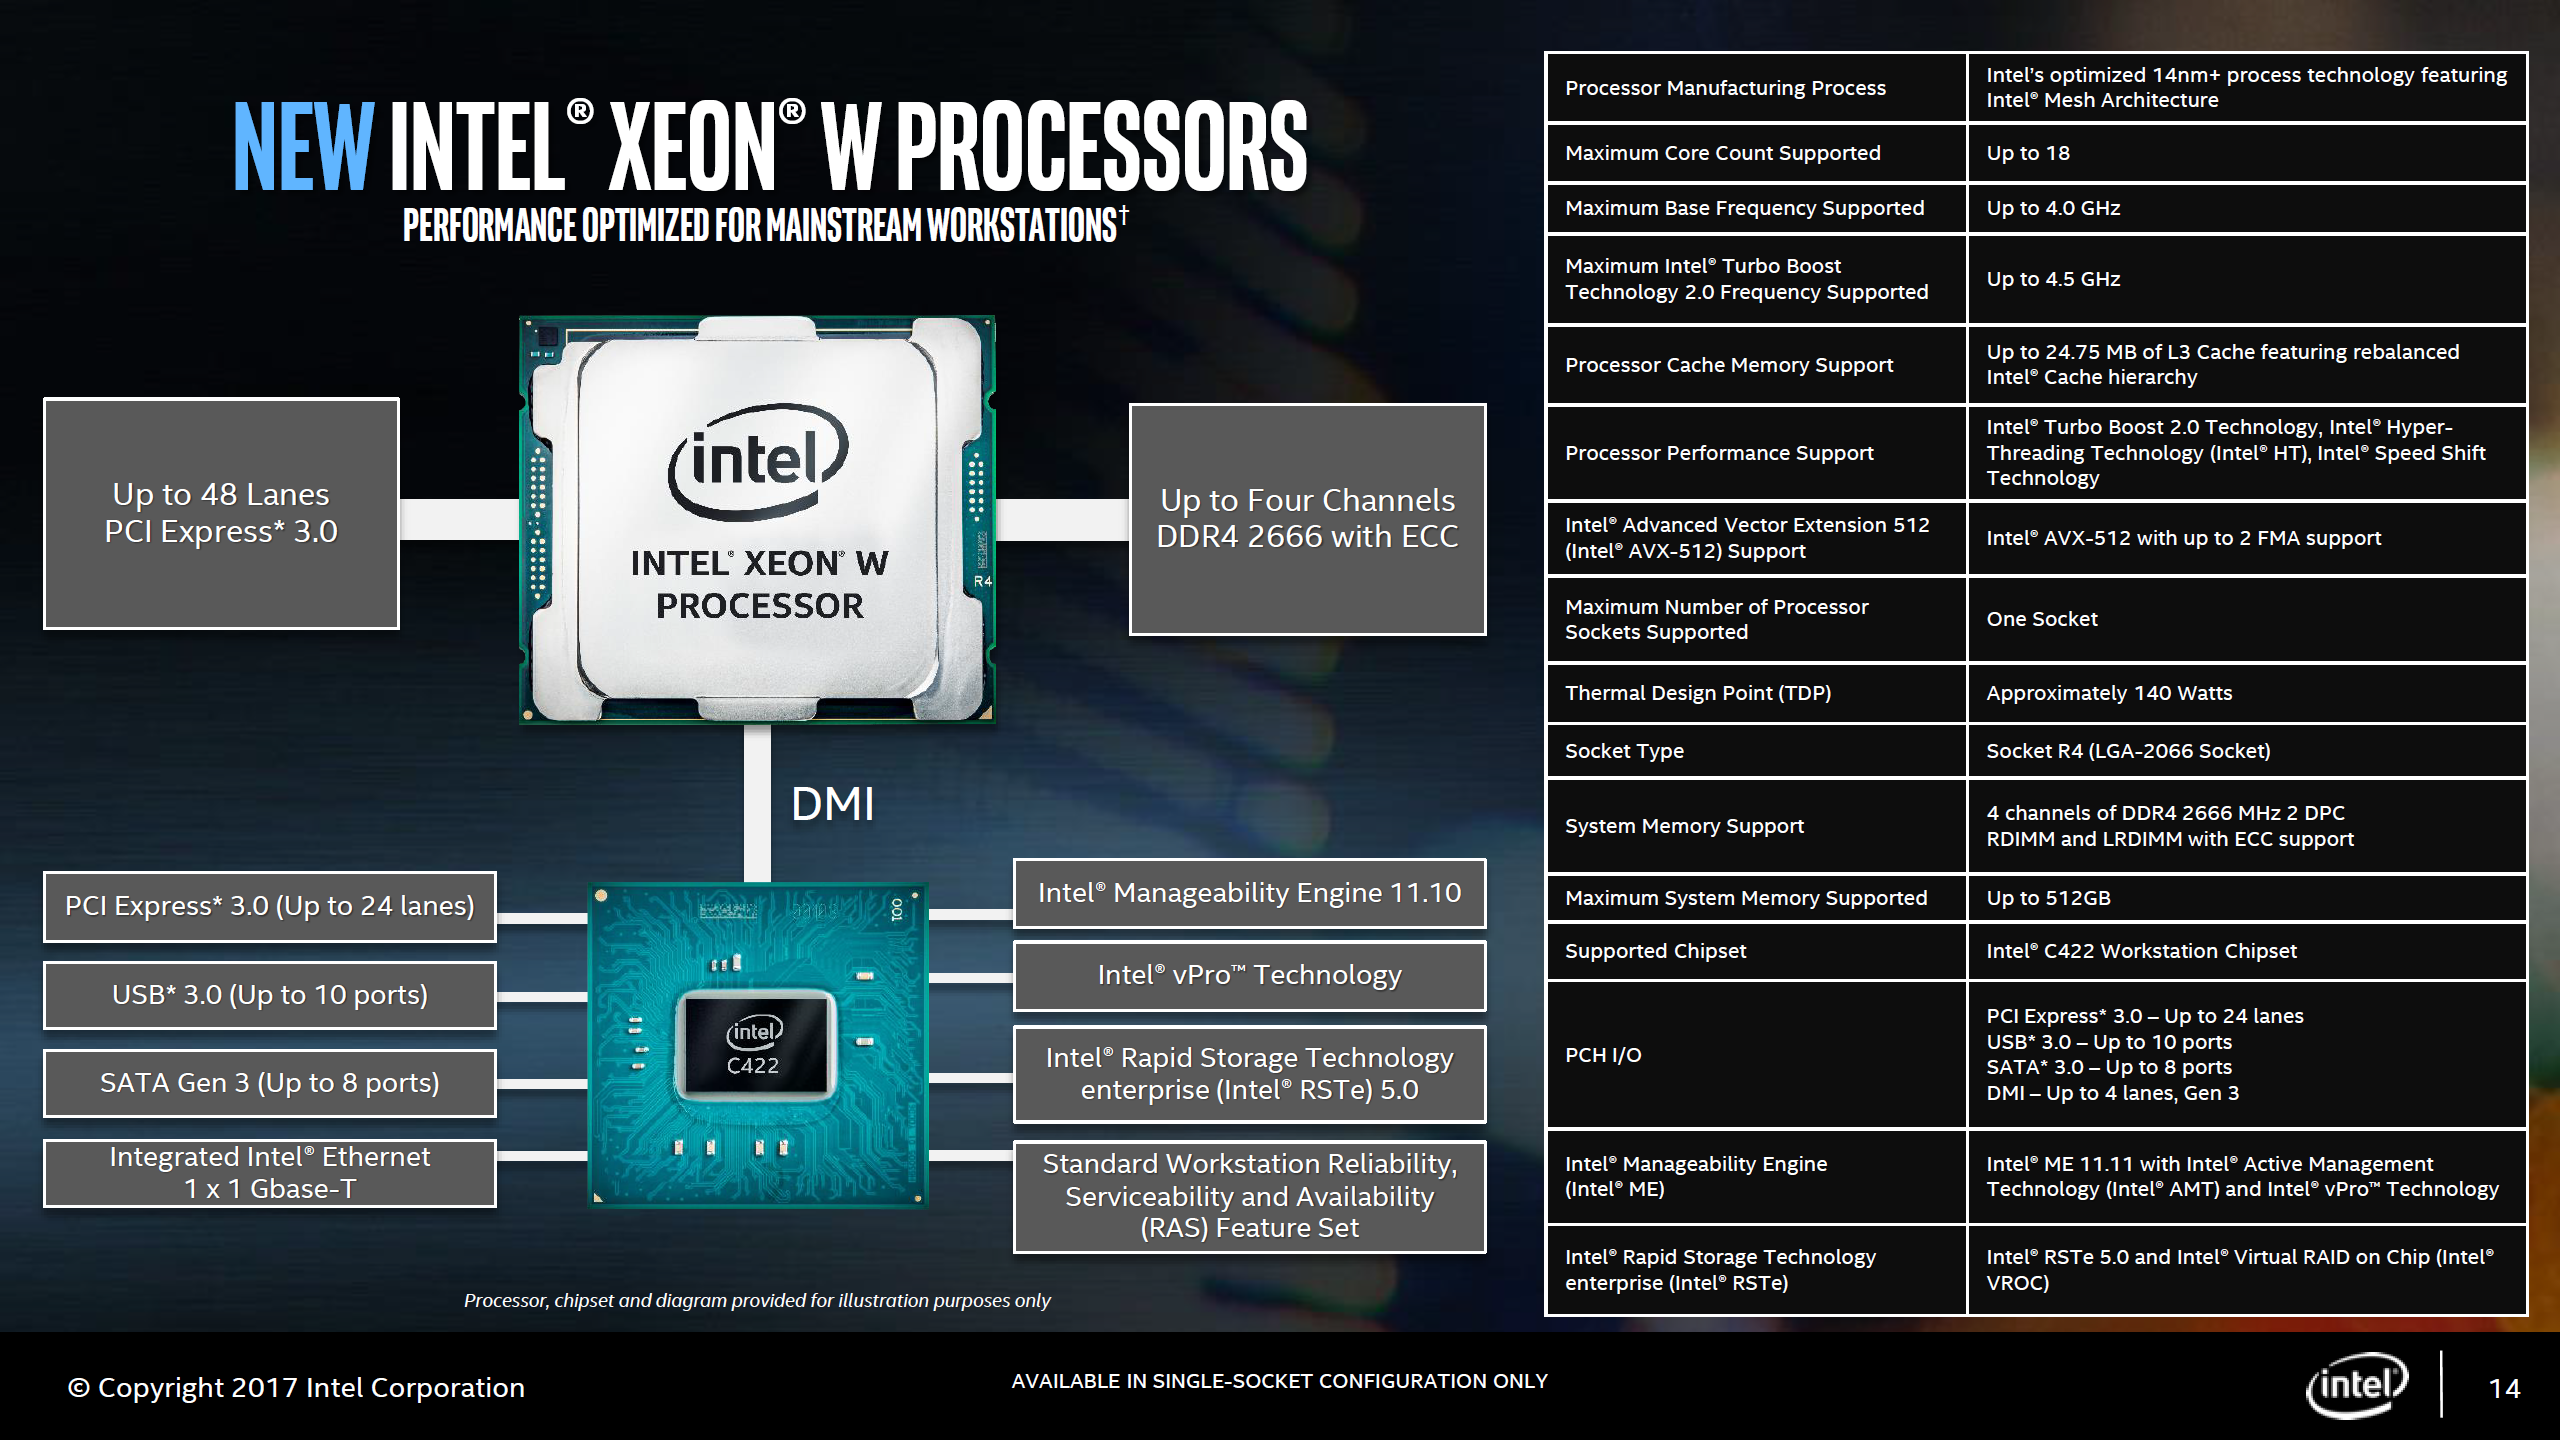 Intel Xeon W işlemcilerini duyurdu